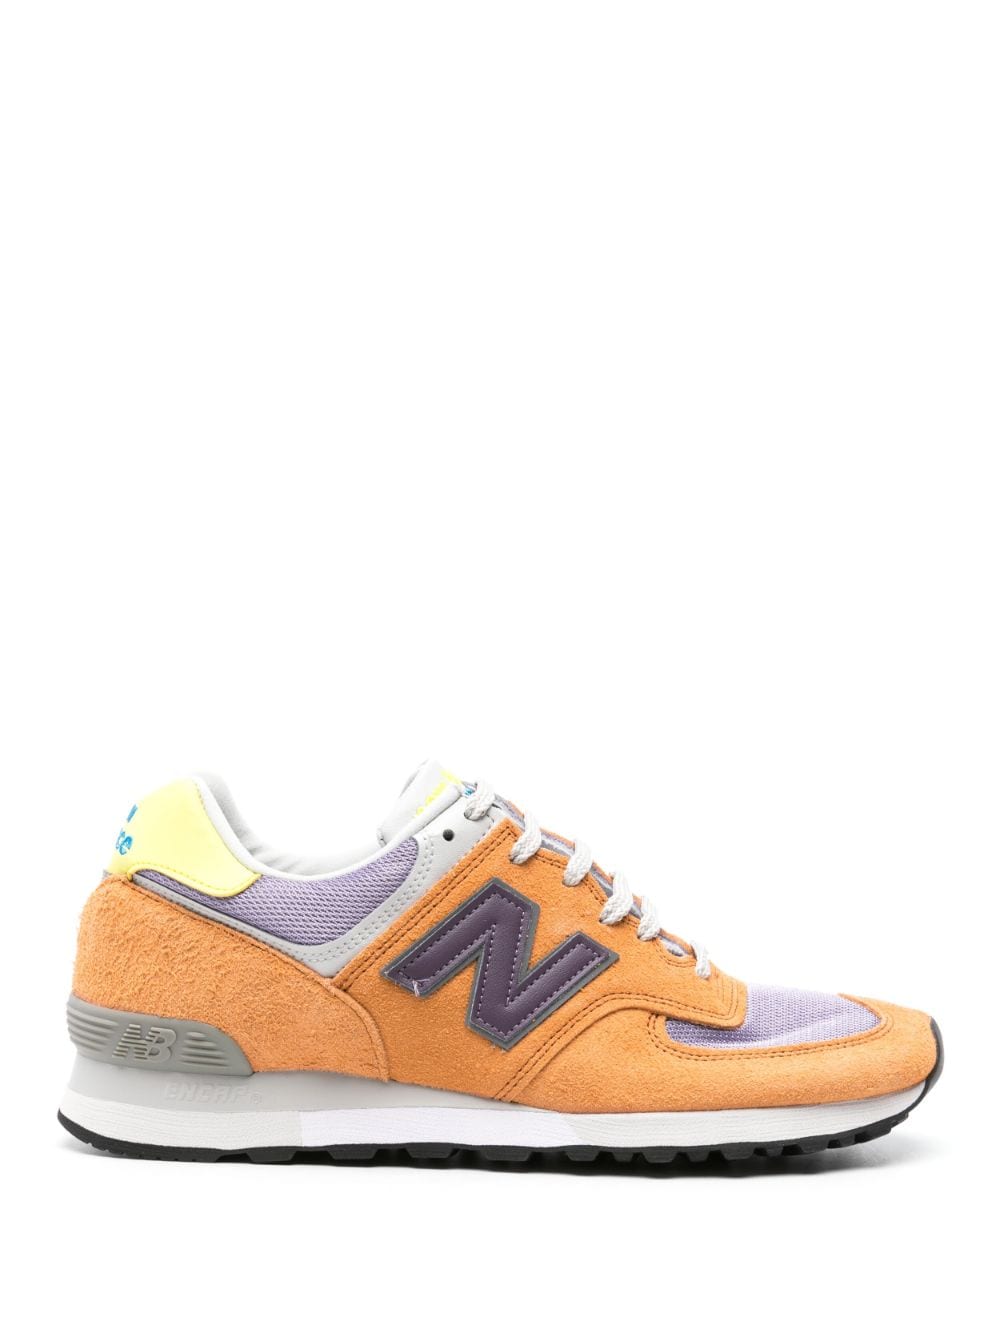 New Balance 576 suede sneakers - Orange von New Balance